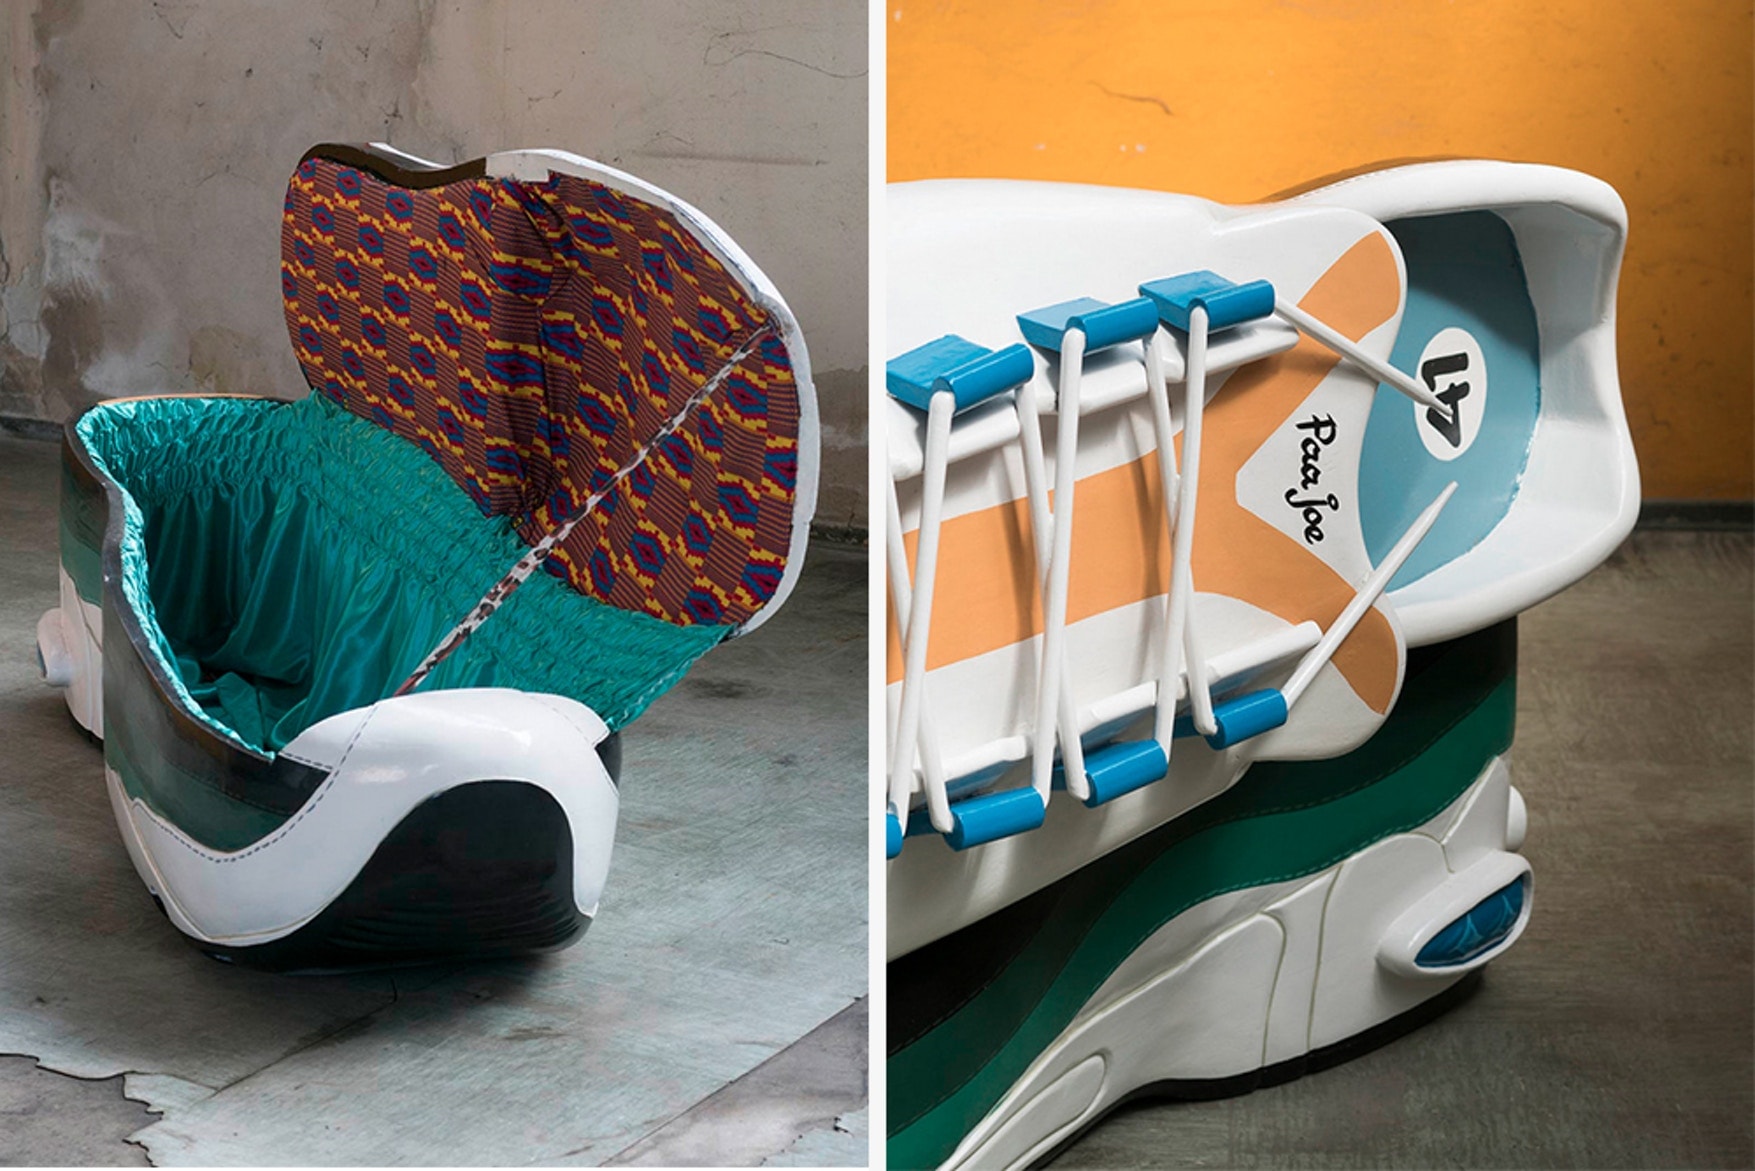 藝術家 Paa Joe 打造 Nike Air Max 95 造型棺材